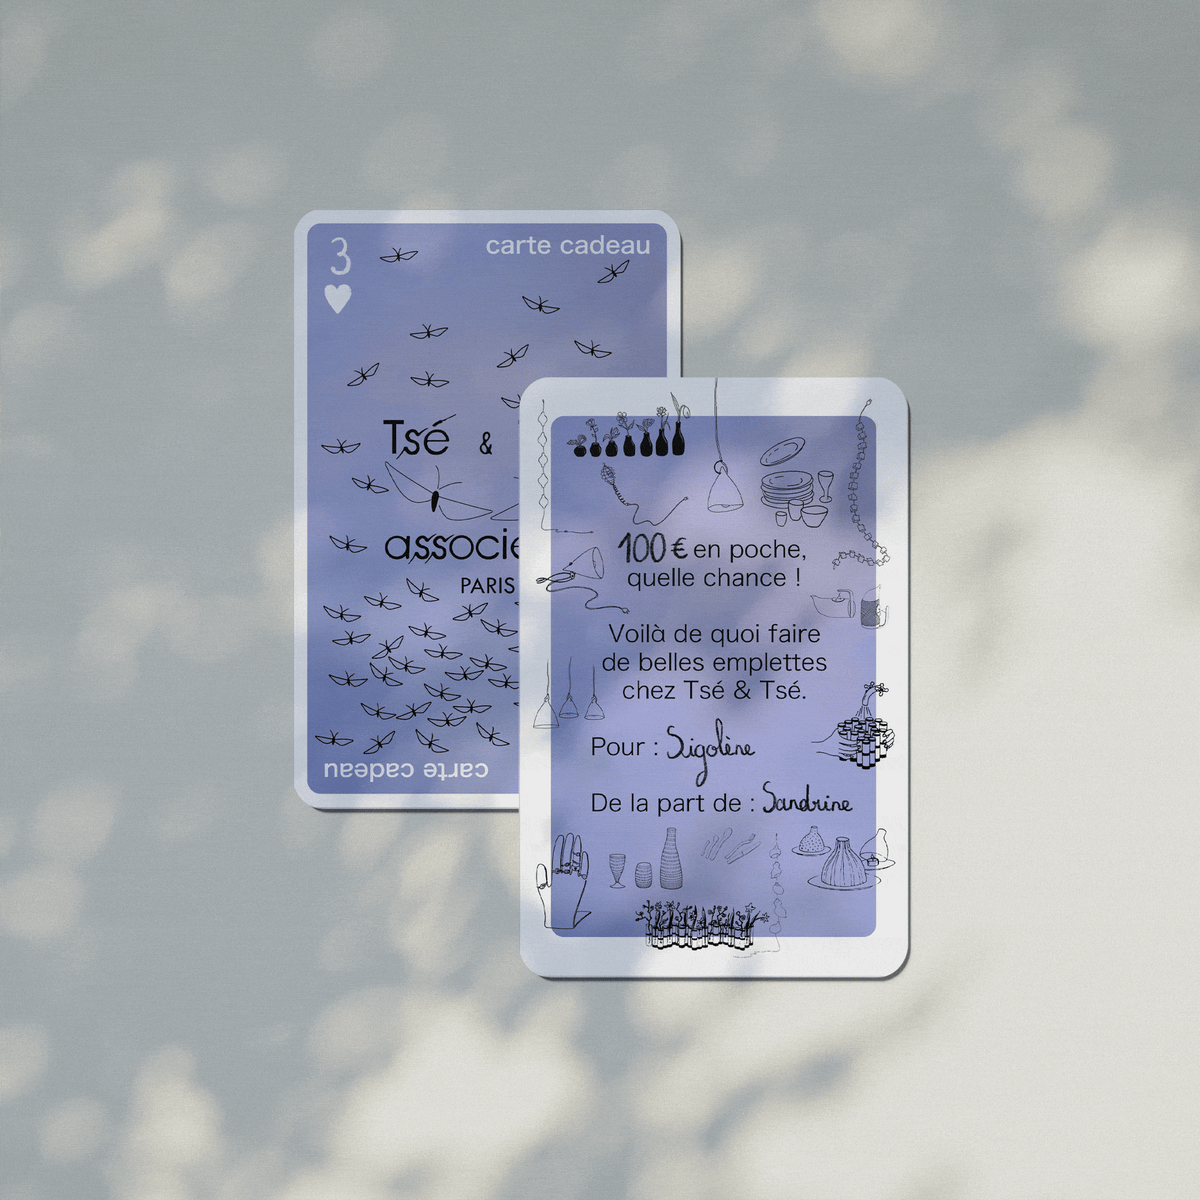 THE Tsé & Tsé GIFT CARD